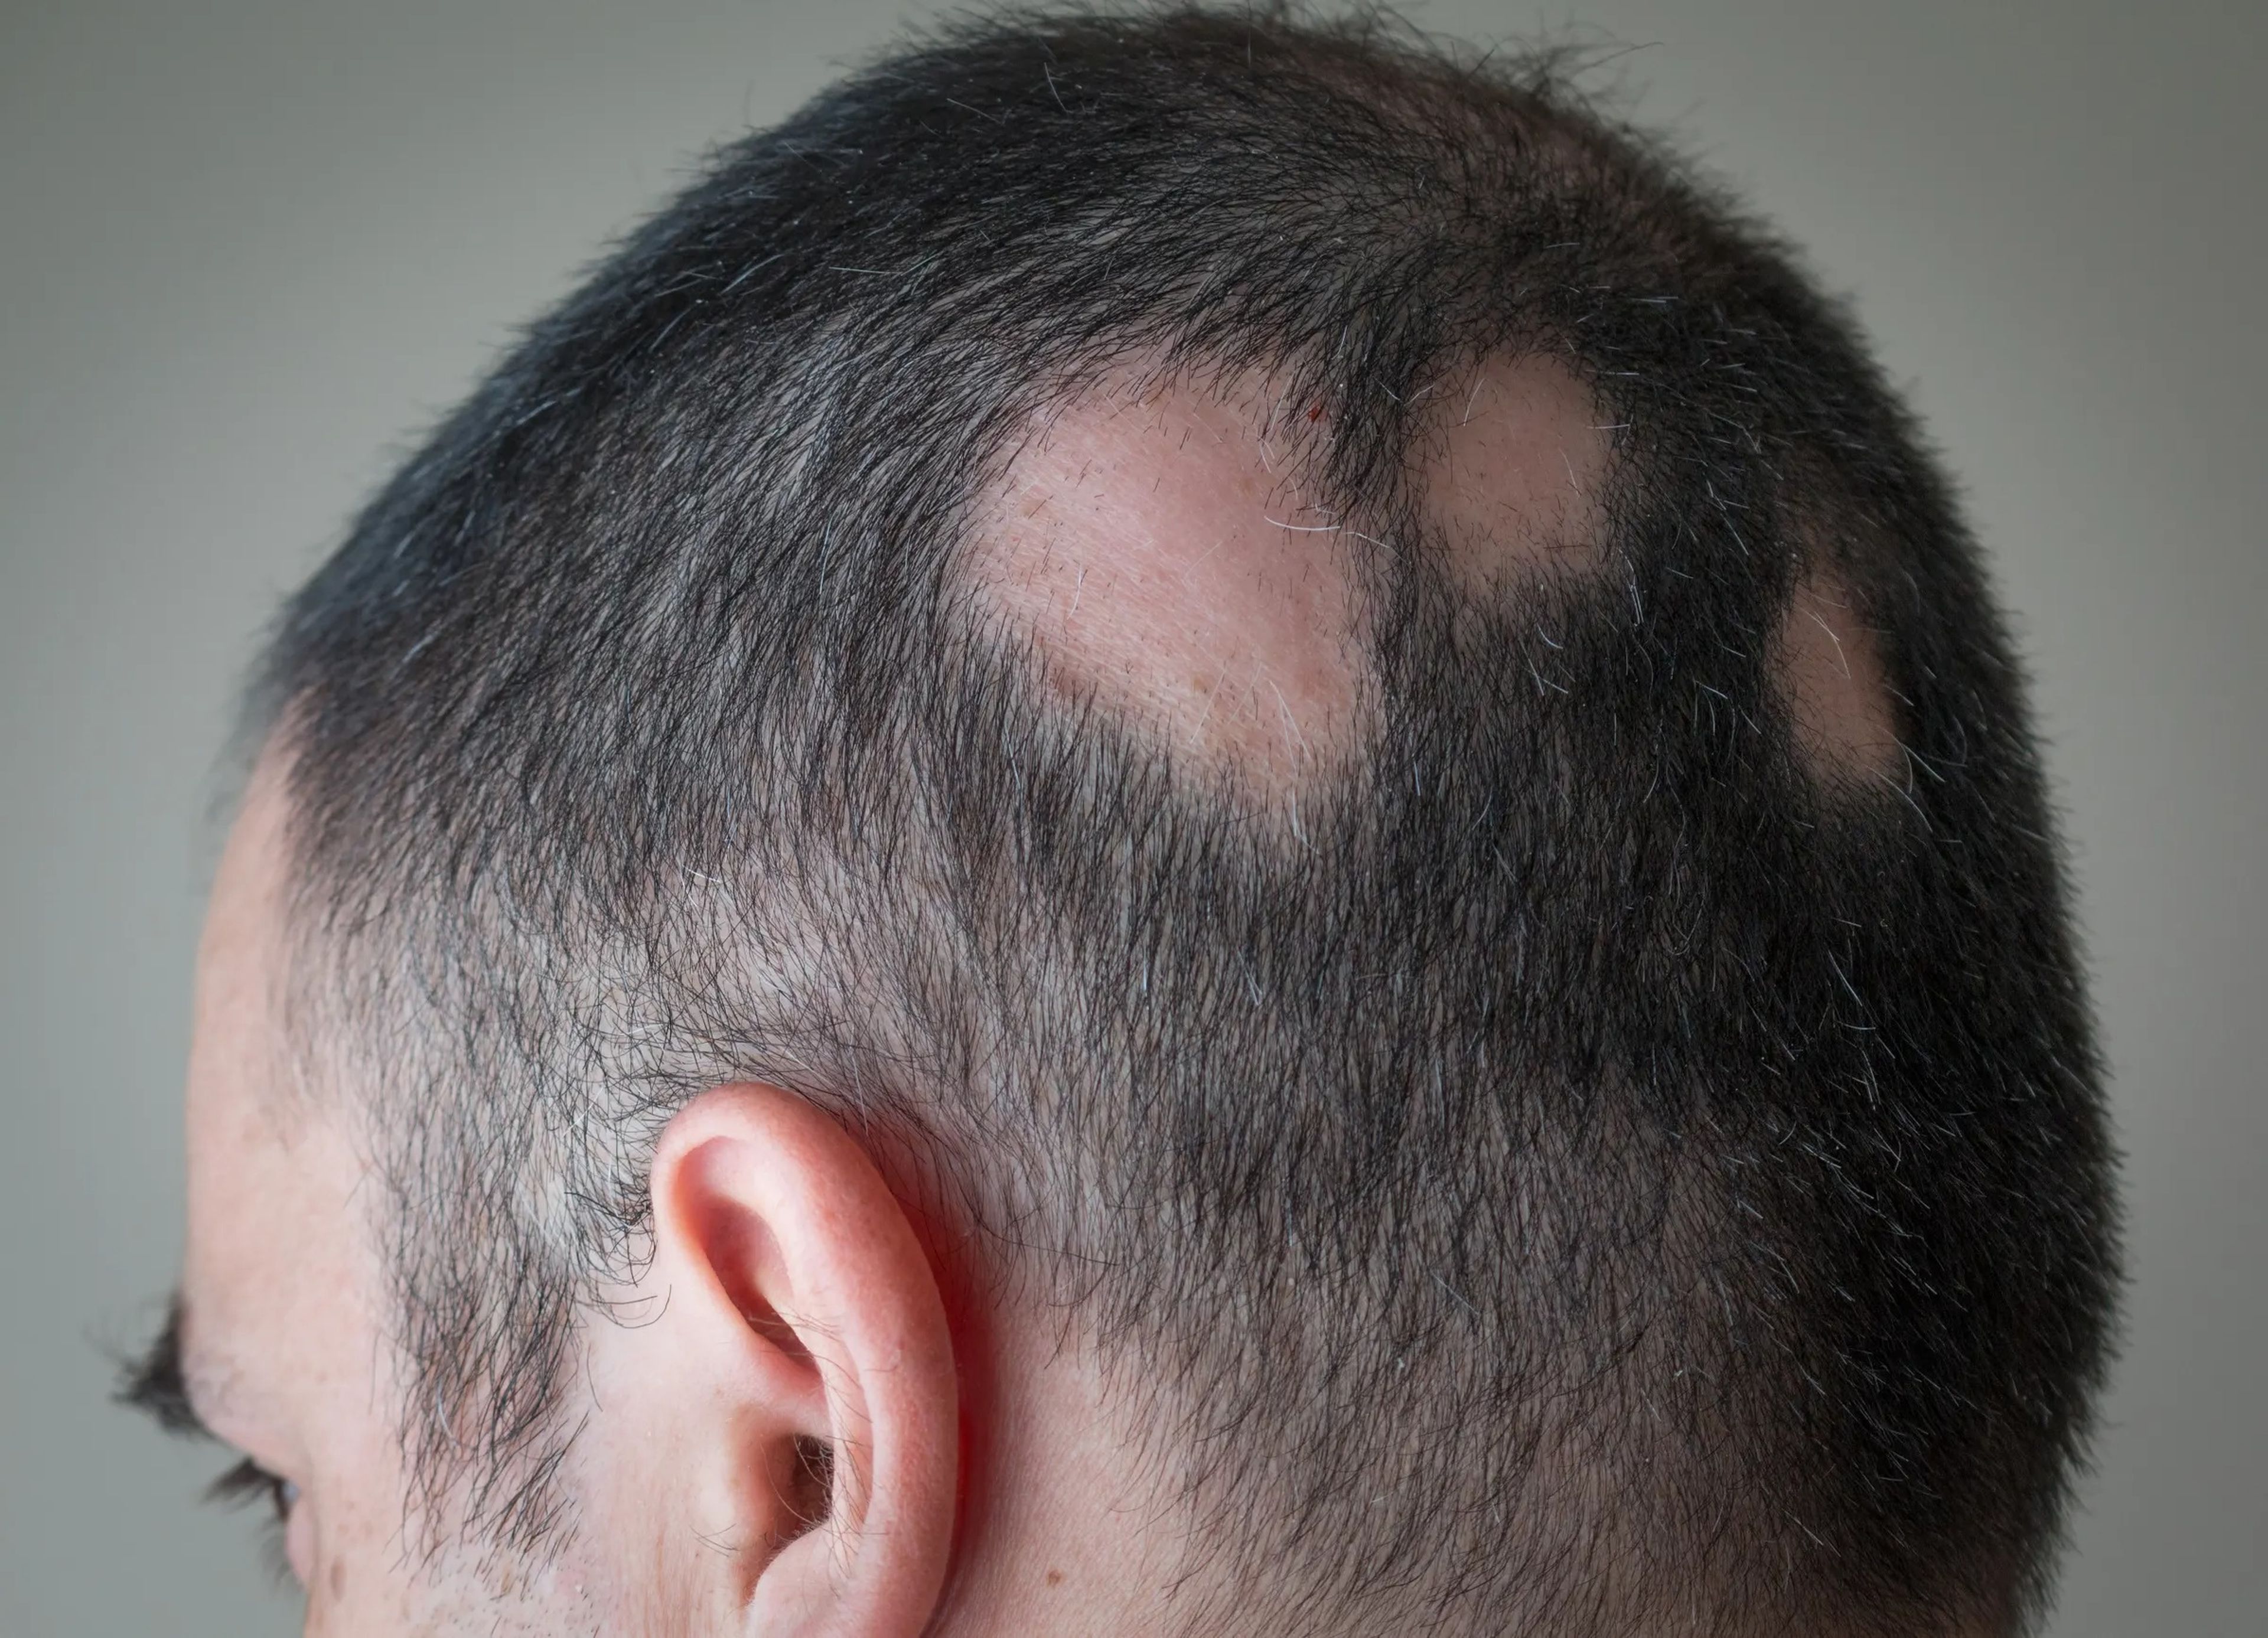 Encantador exterior administración El tratamiento para la alopecia que recupera hasta el 80% del cabello |  Business Insider España